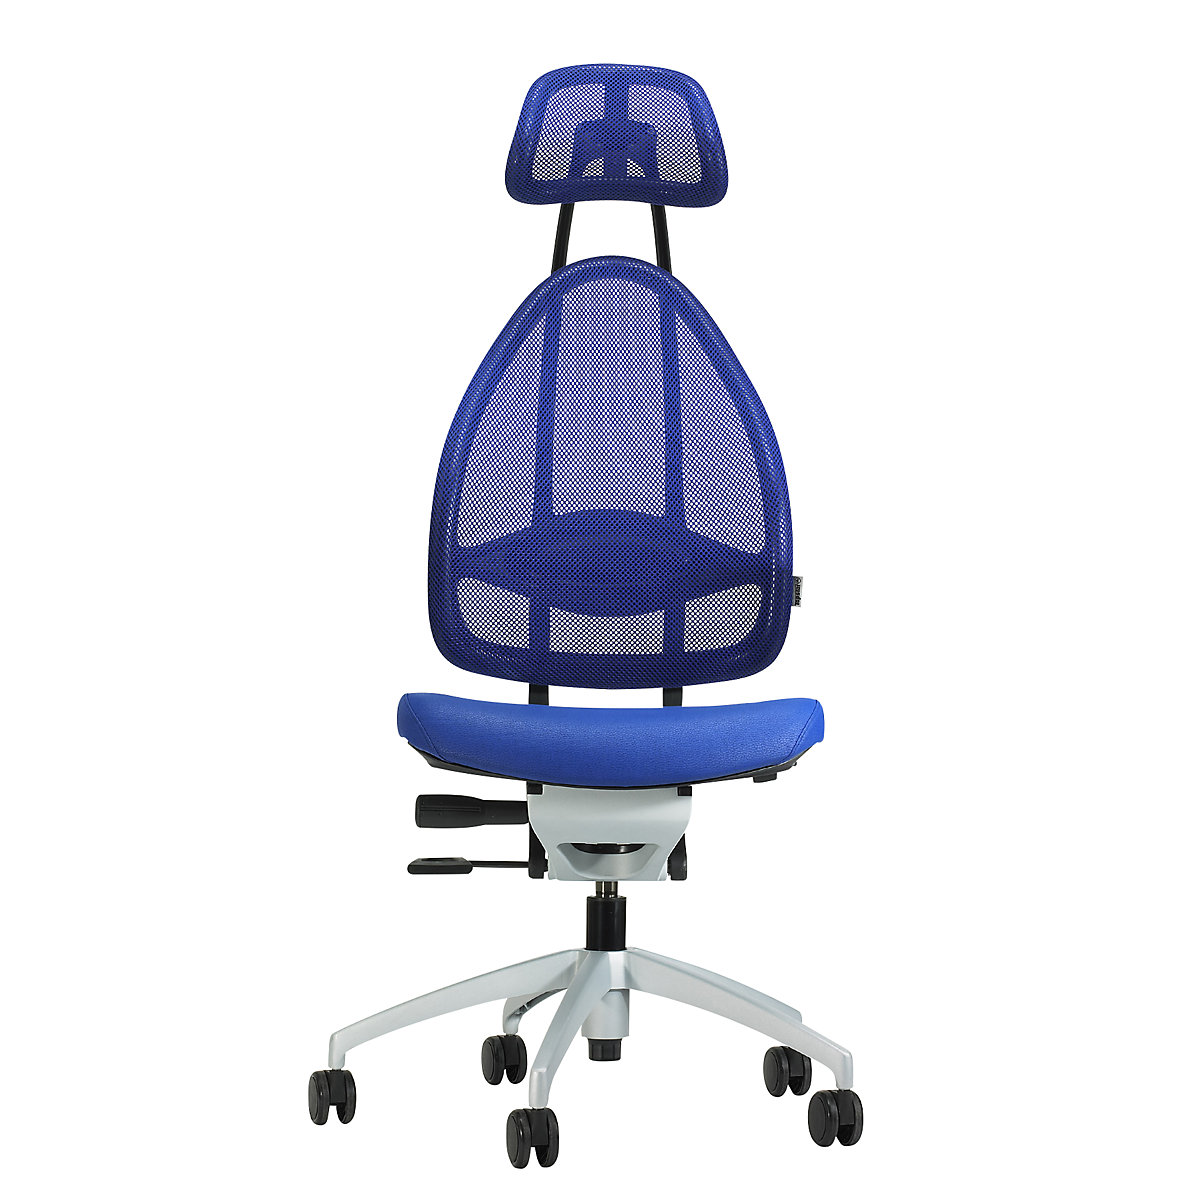 Sedia girevole per ufficio, elegante, completa di poggiatesta e schienale in rete - Topstar